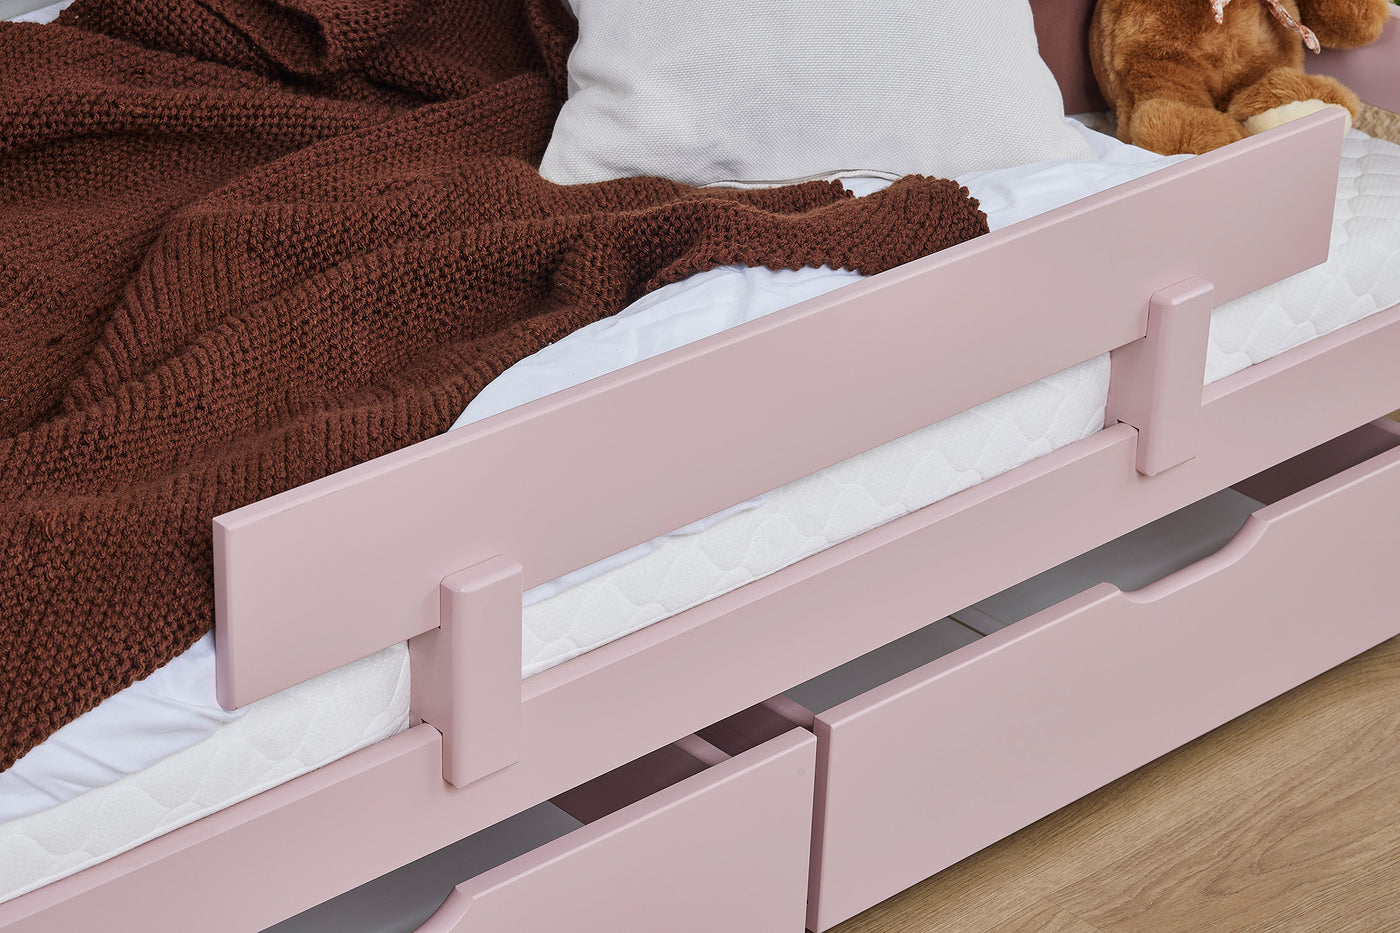 Laatikosto pyörillä, 70x160cm kokoisen sängyn alle, hennonpunainen - Mööpeli.com